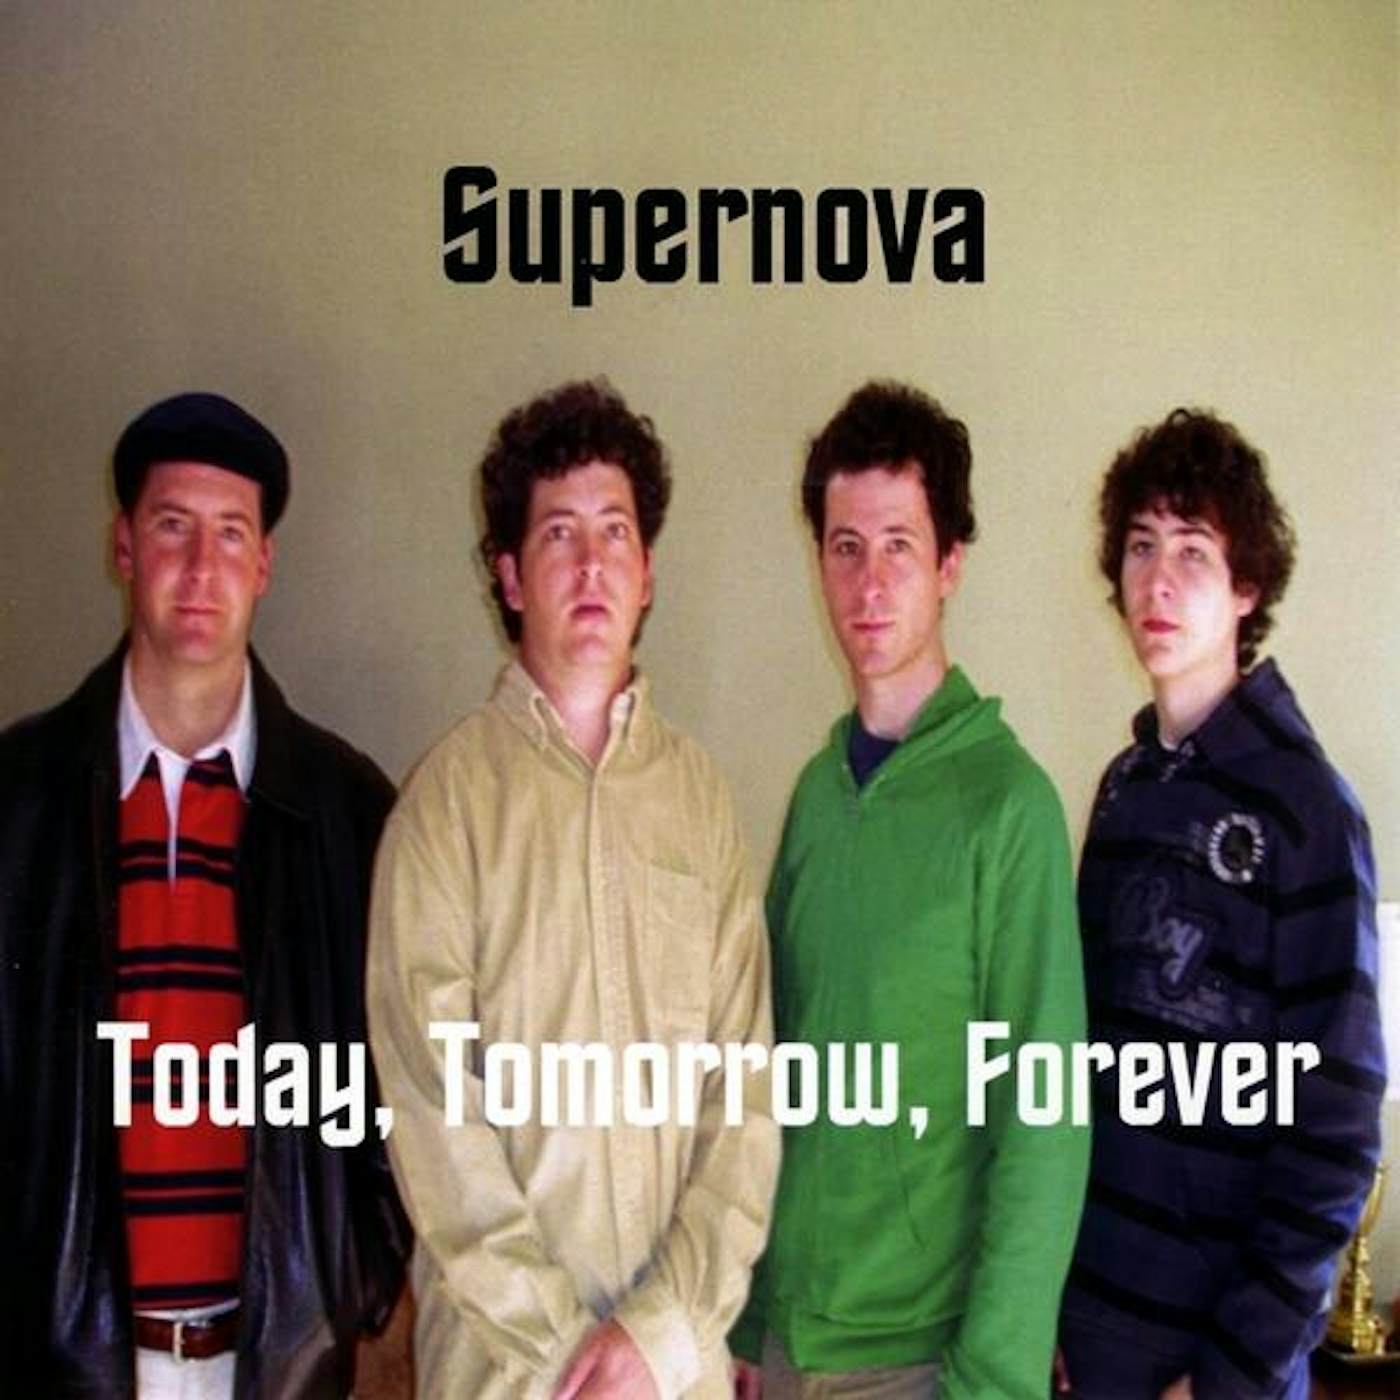 Supernova TODAY TOMORROW FOREVER CD